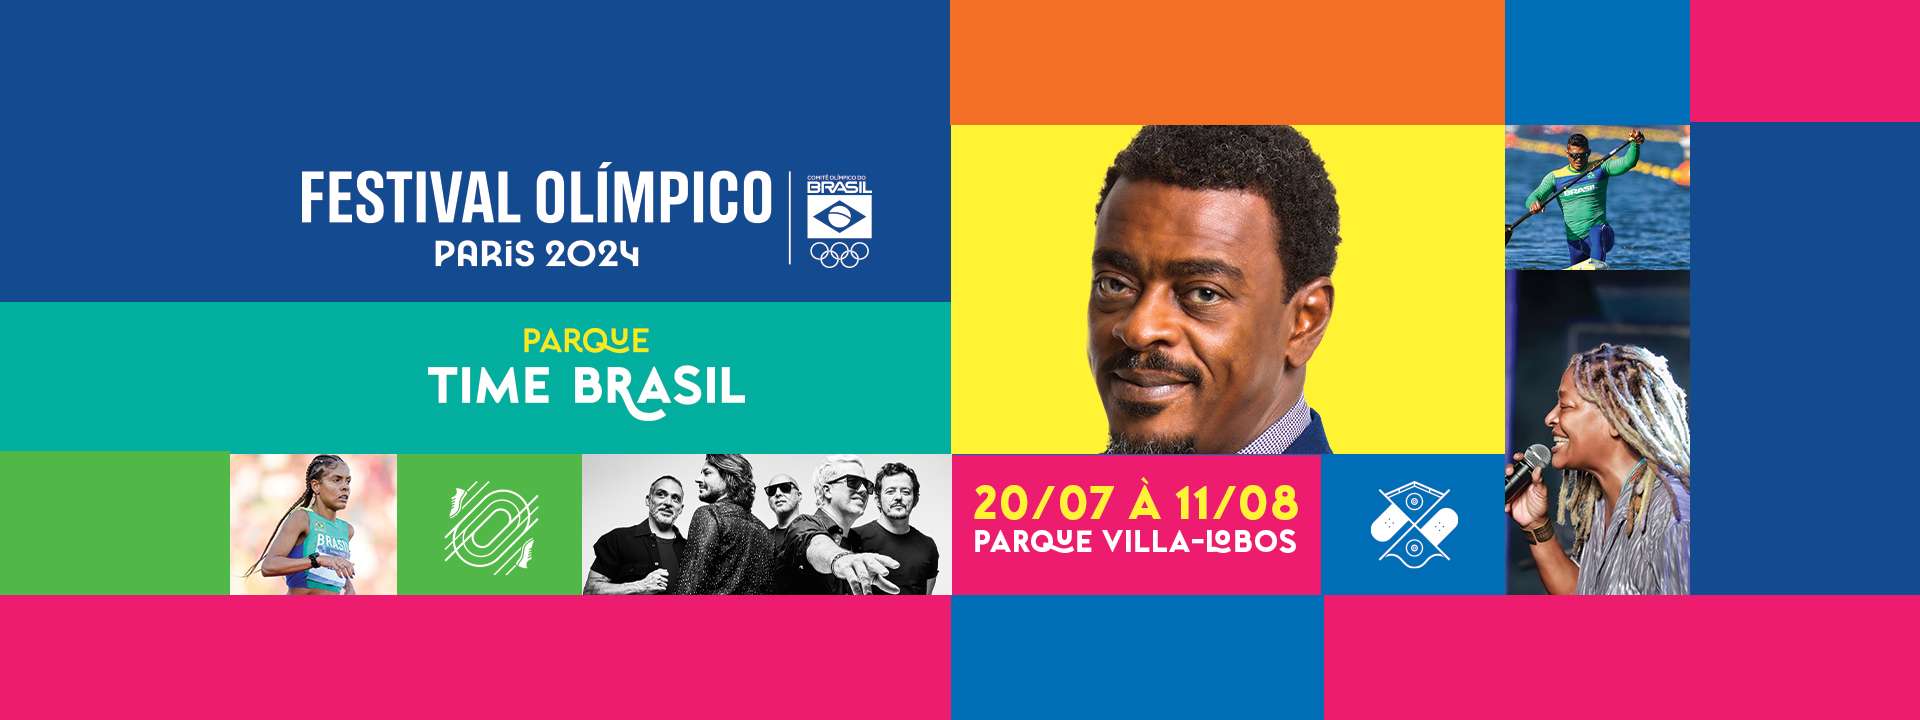 FESTIVAL OLÍMPICO PARQUE TIME BRASIL